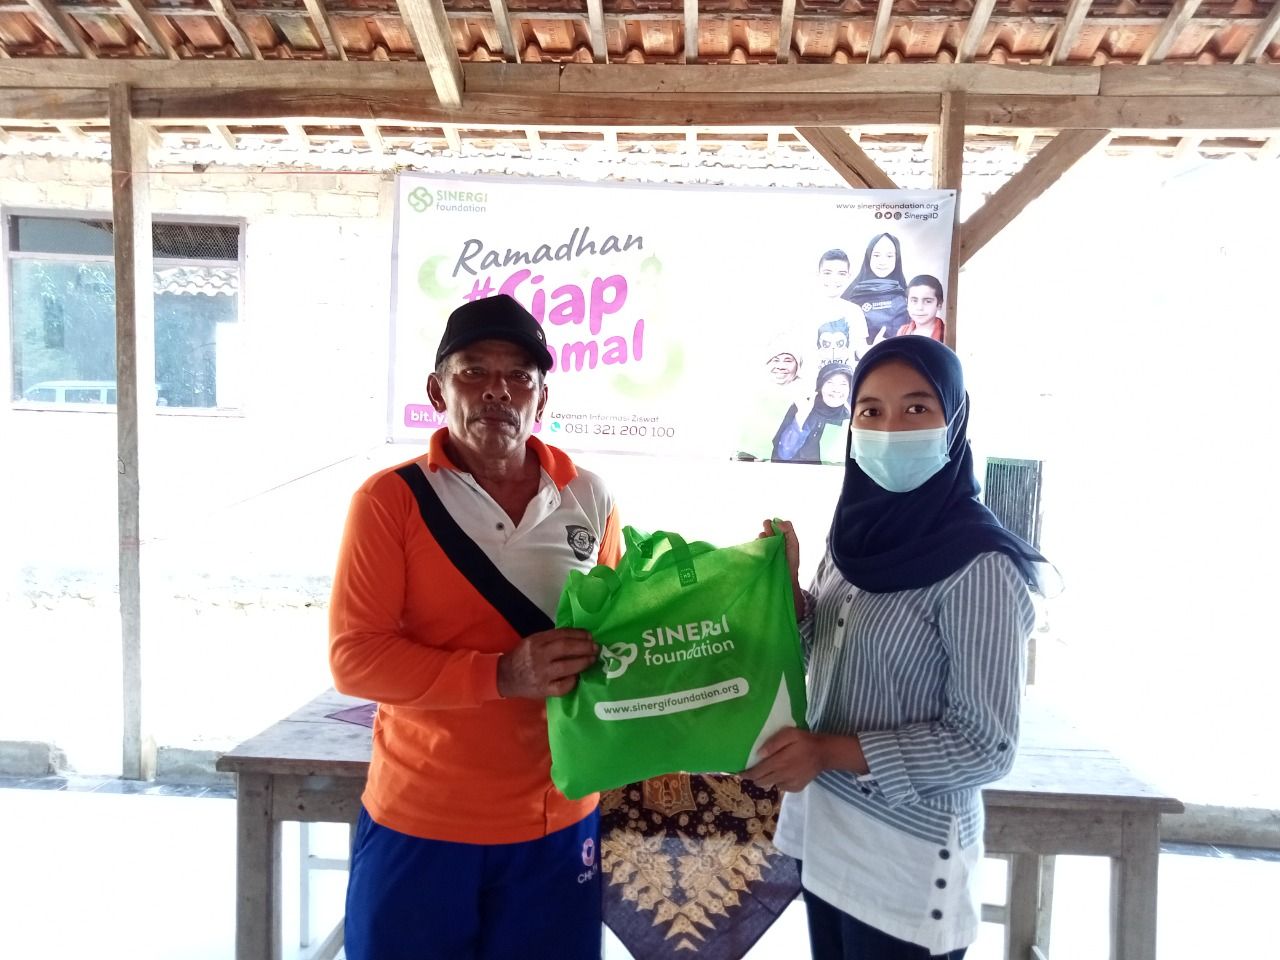 Dukung nelayan terdampak pandemi, Sinergi Foundation salurkan paket Ramadhan di pesisir timur Jawa.